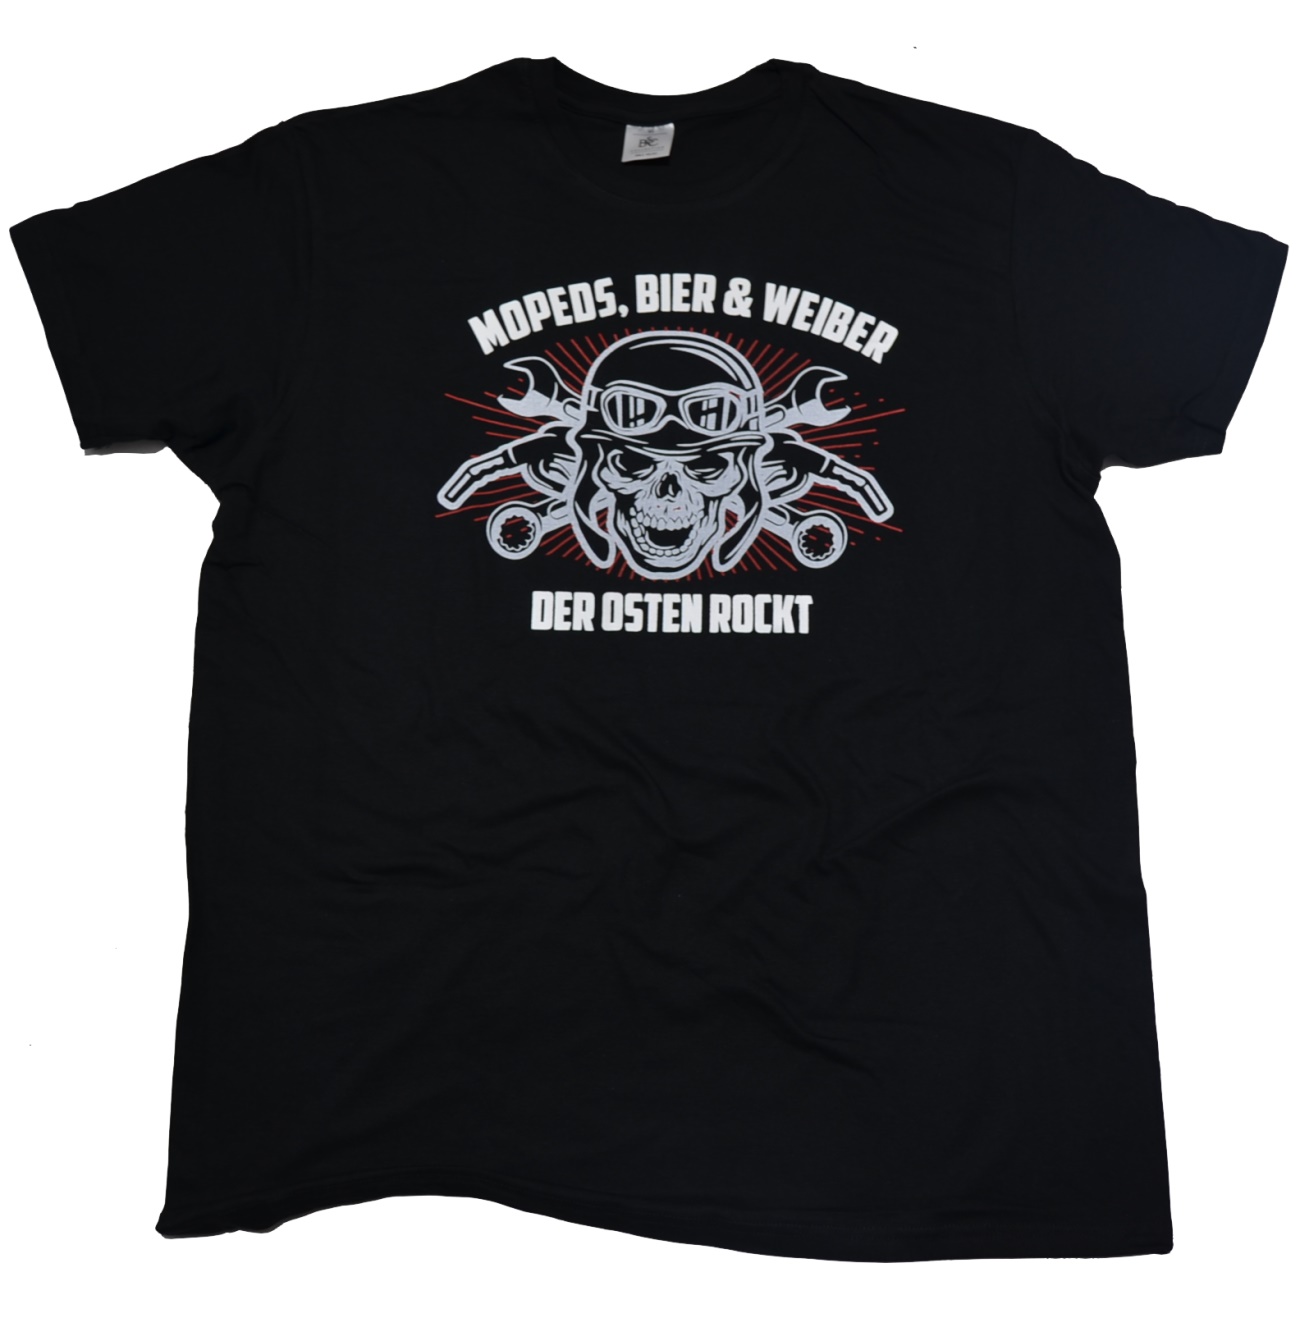 T-Shirt Mopeds Bier und Weiber der Osten Rockt G114U K64 K65